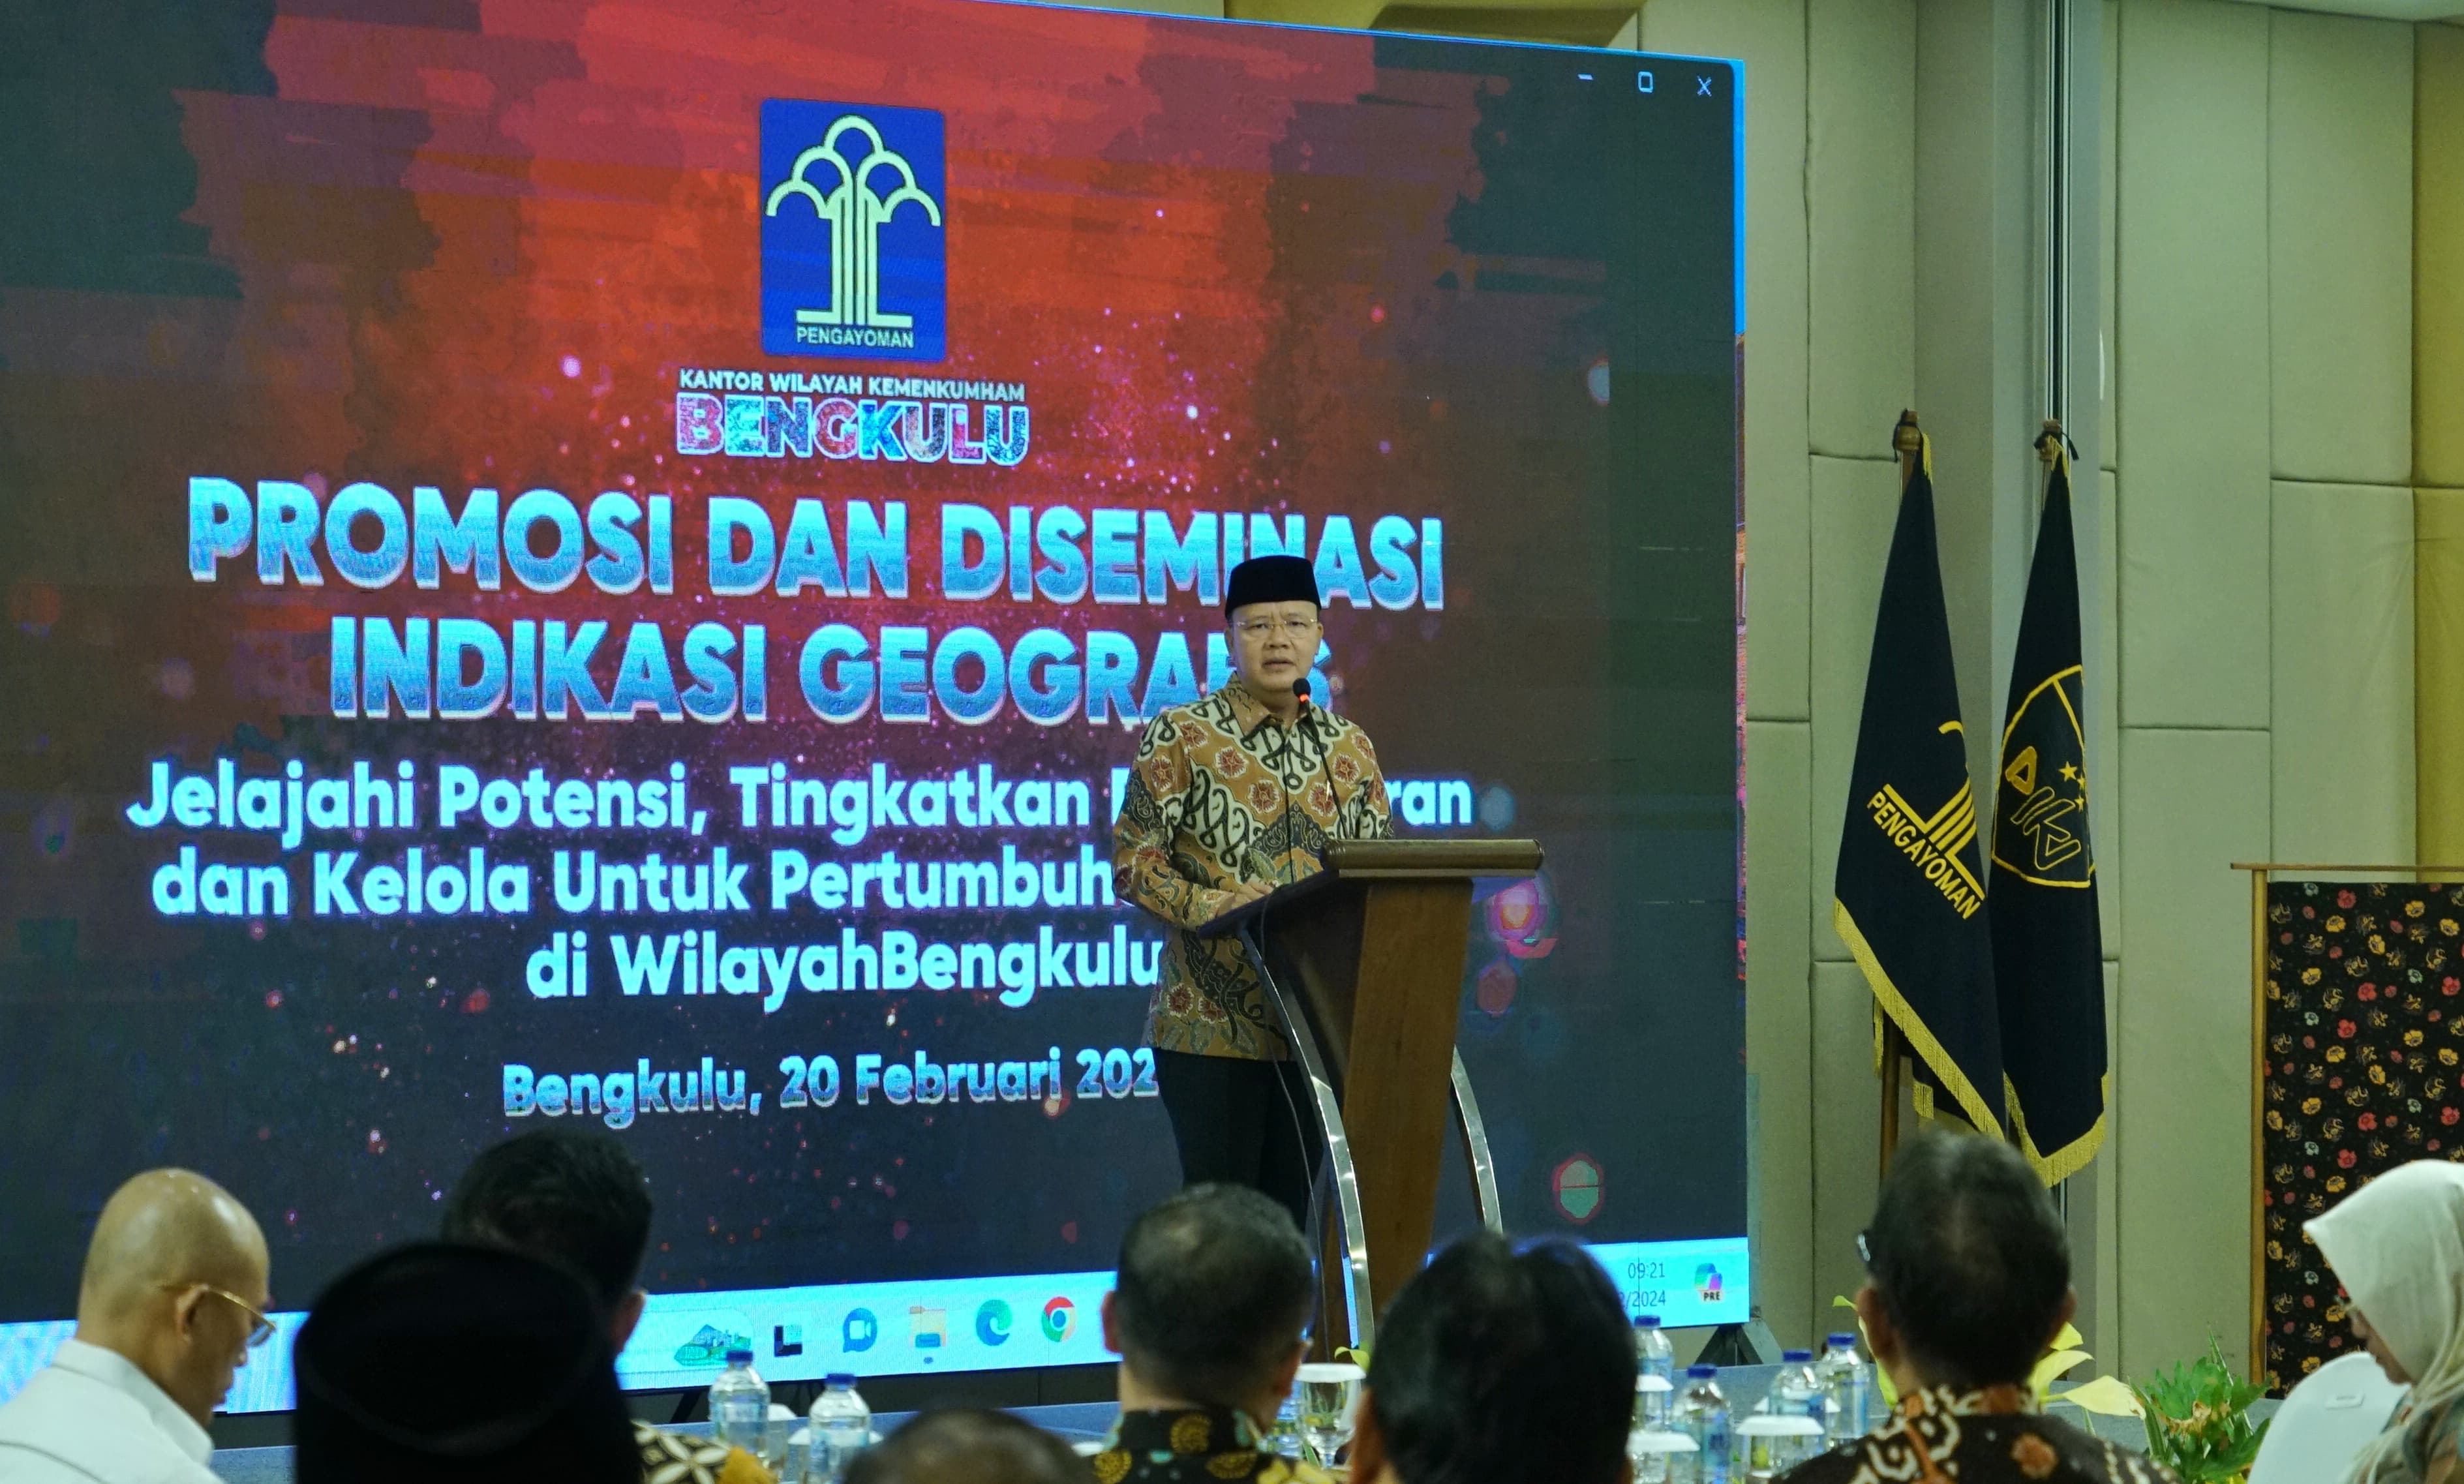 Tingkatkan Perekonomian, Gubernur Rohidin Dorong Potensi Unggulan Daerah Terdaftar Indikasi Geografis